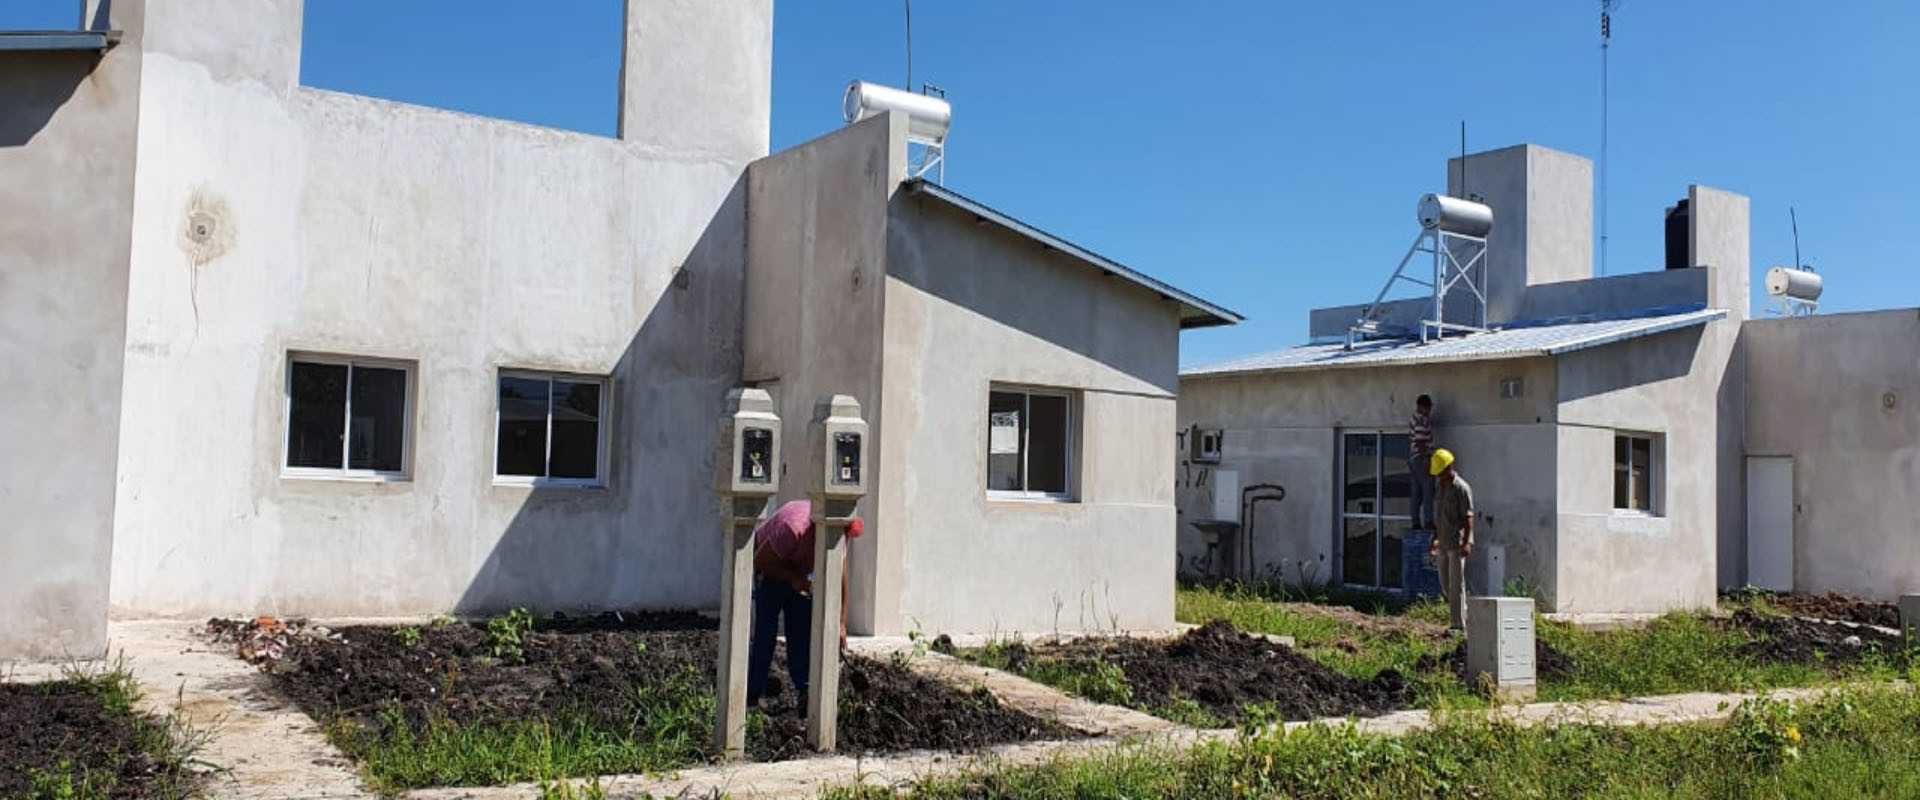 Con fondos provinciales licitarán nuevas viviendas en dos localidades entrerrianas